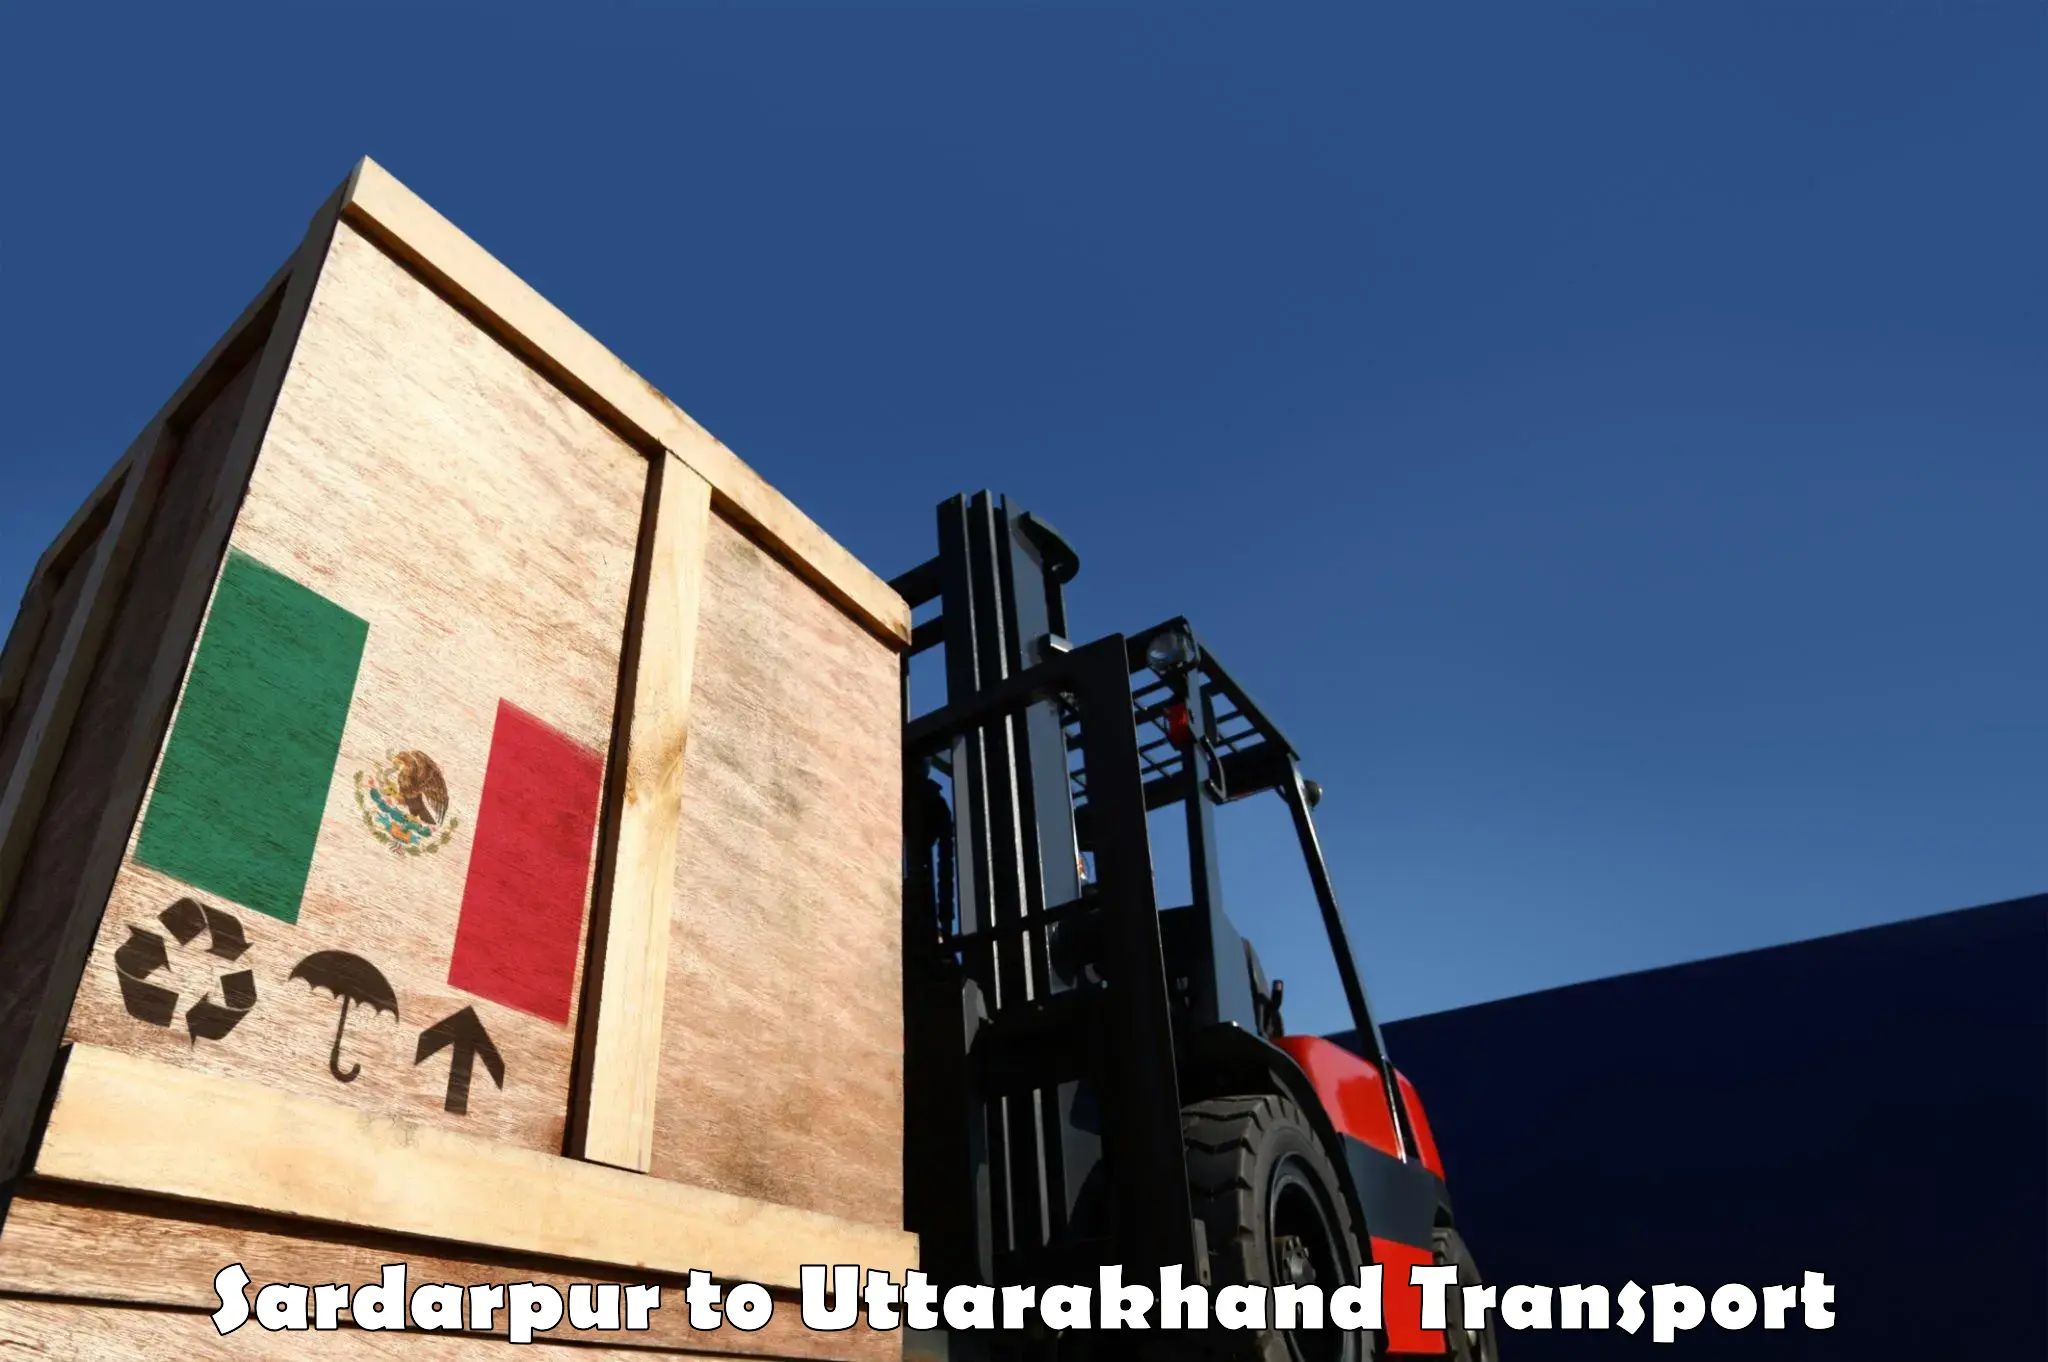 Cycle transportation service Sardarpur to Kotdwara